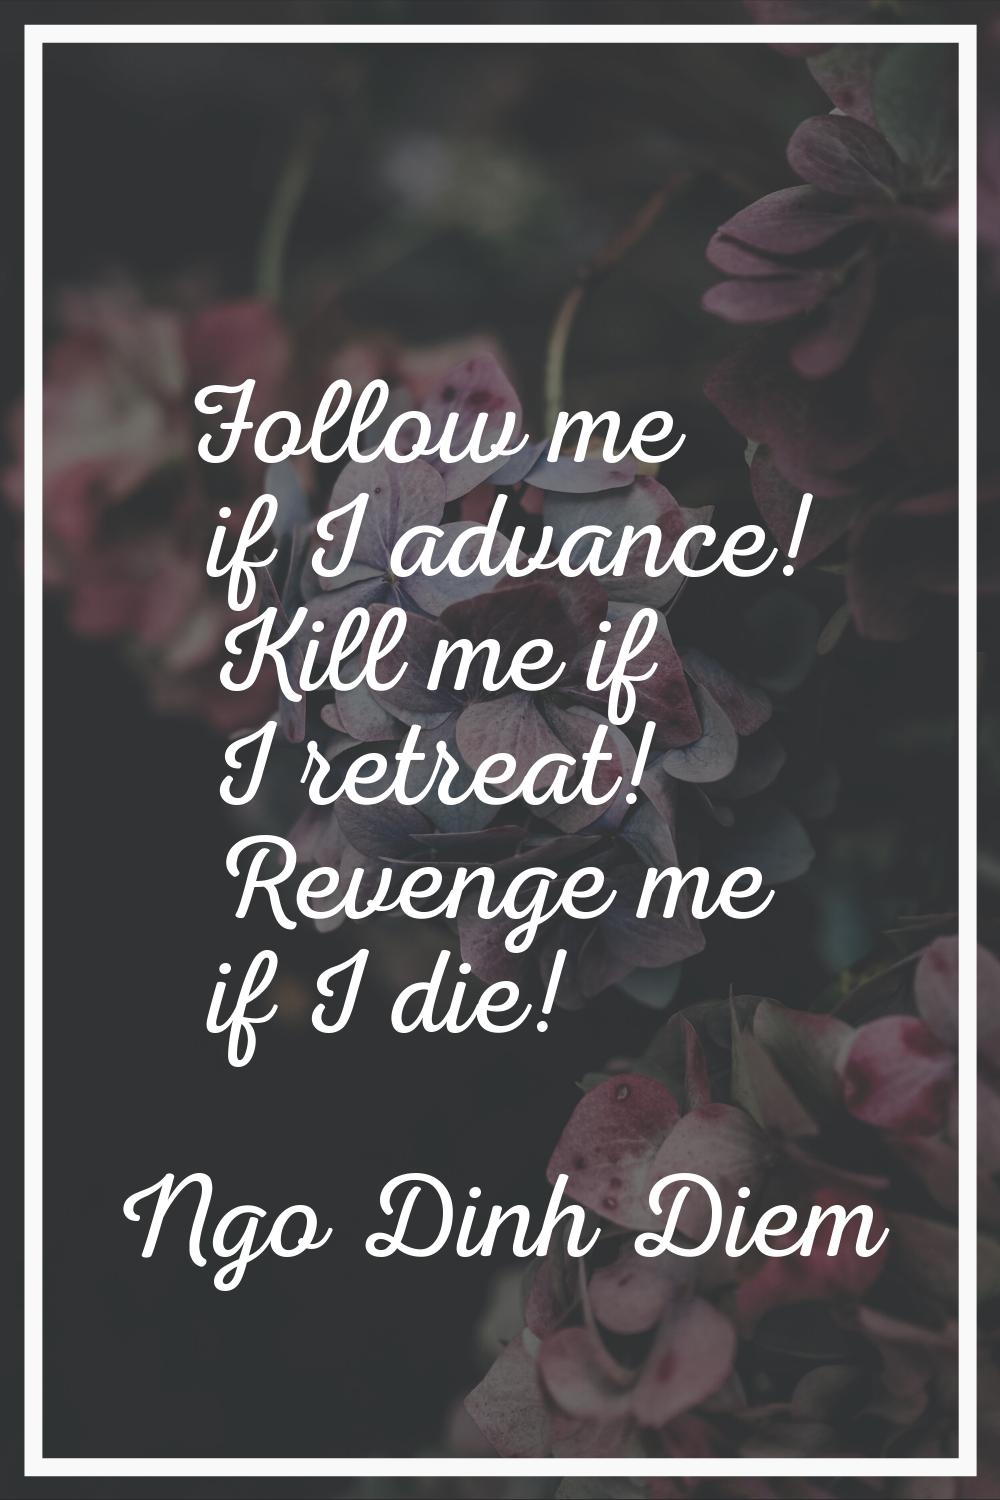 Follow me if I advance! Kill me if I retreat! Revenge me if I die!